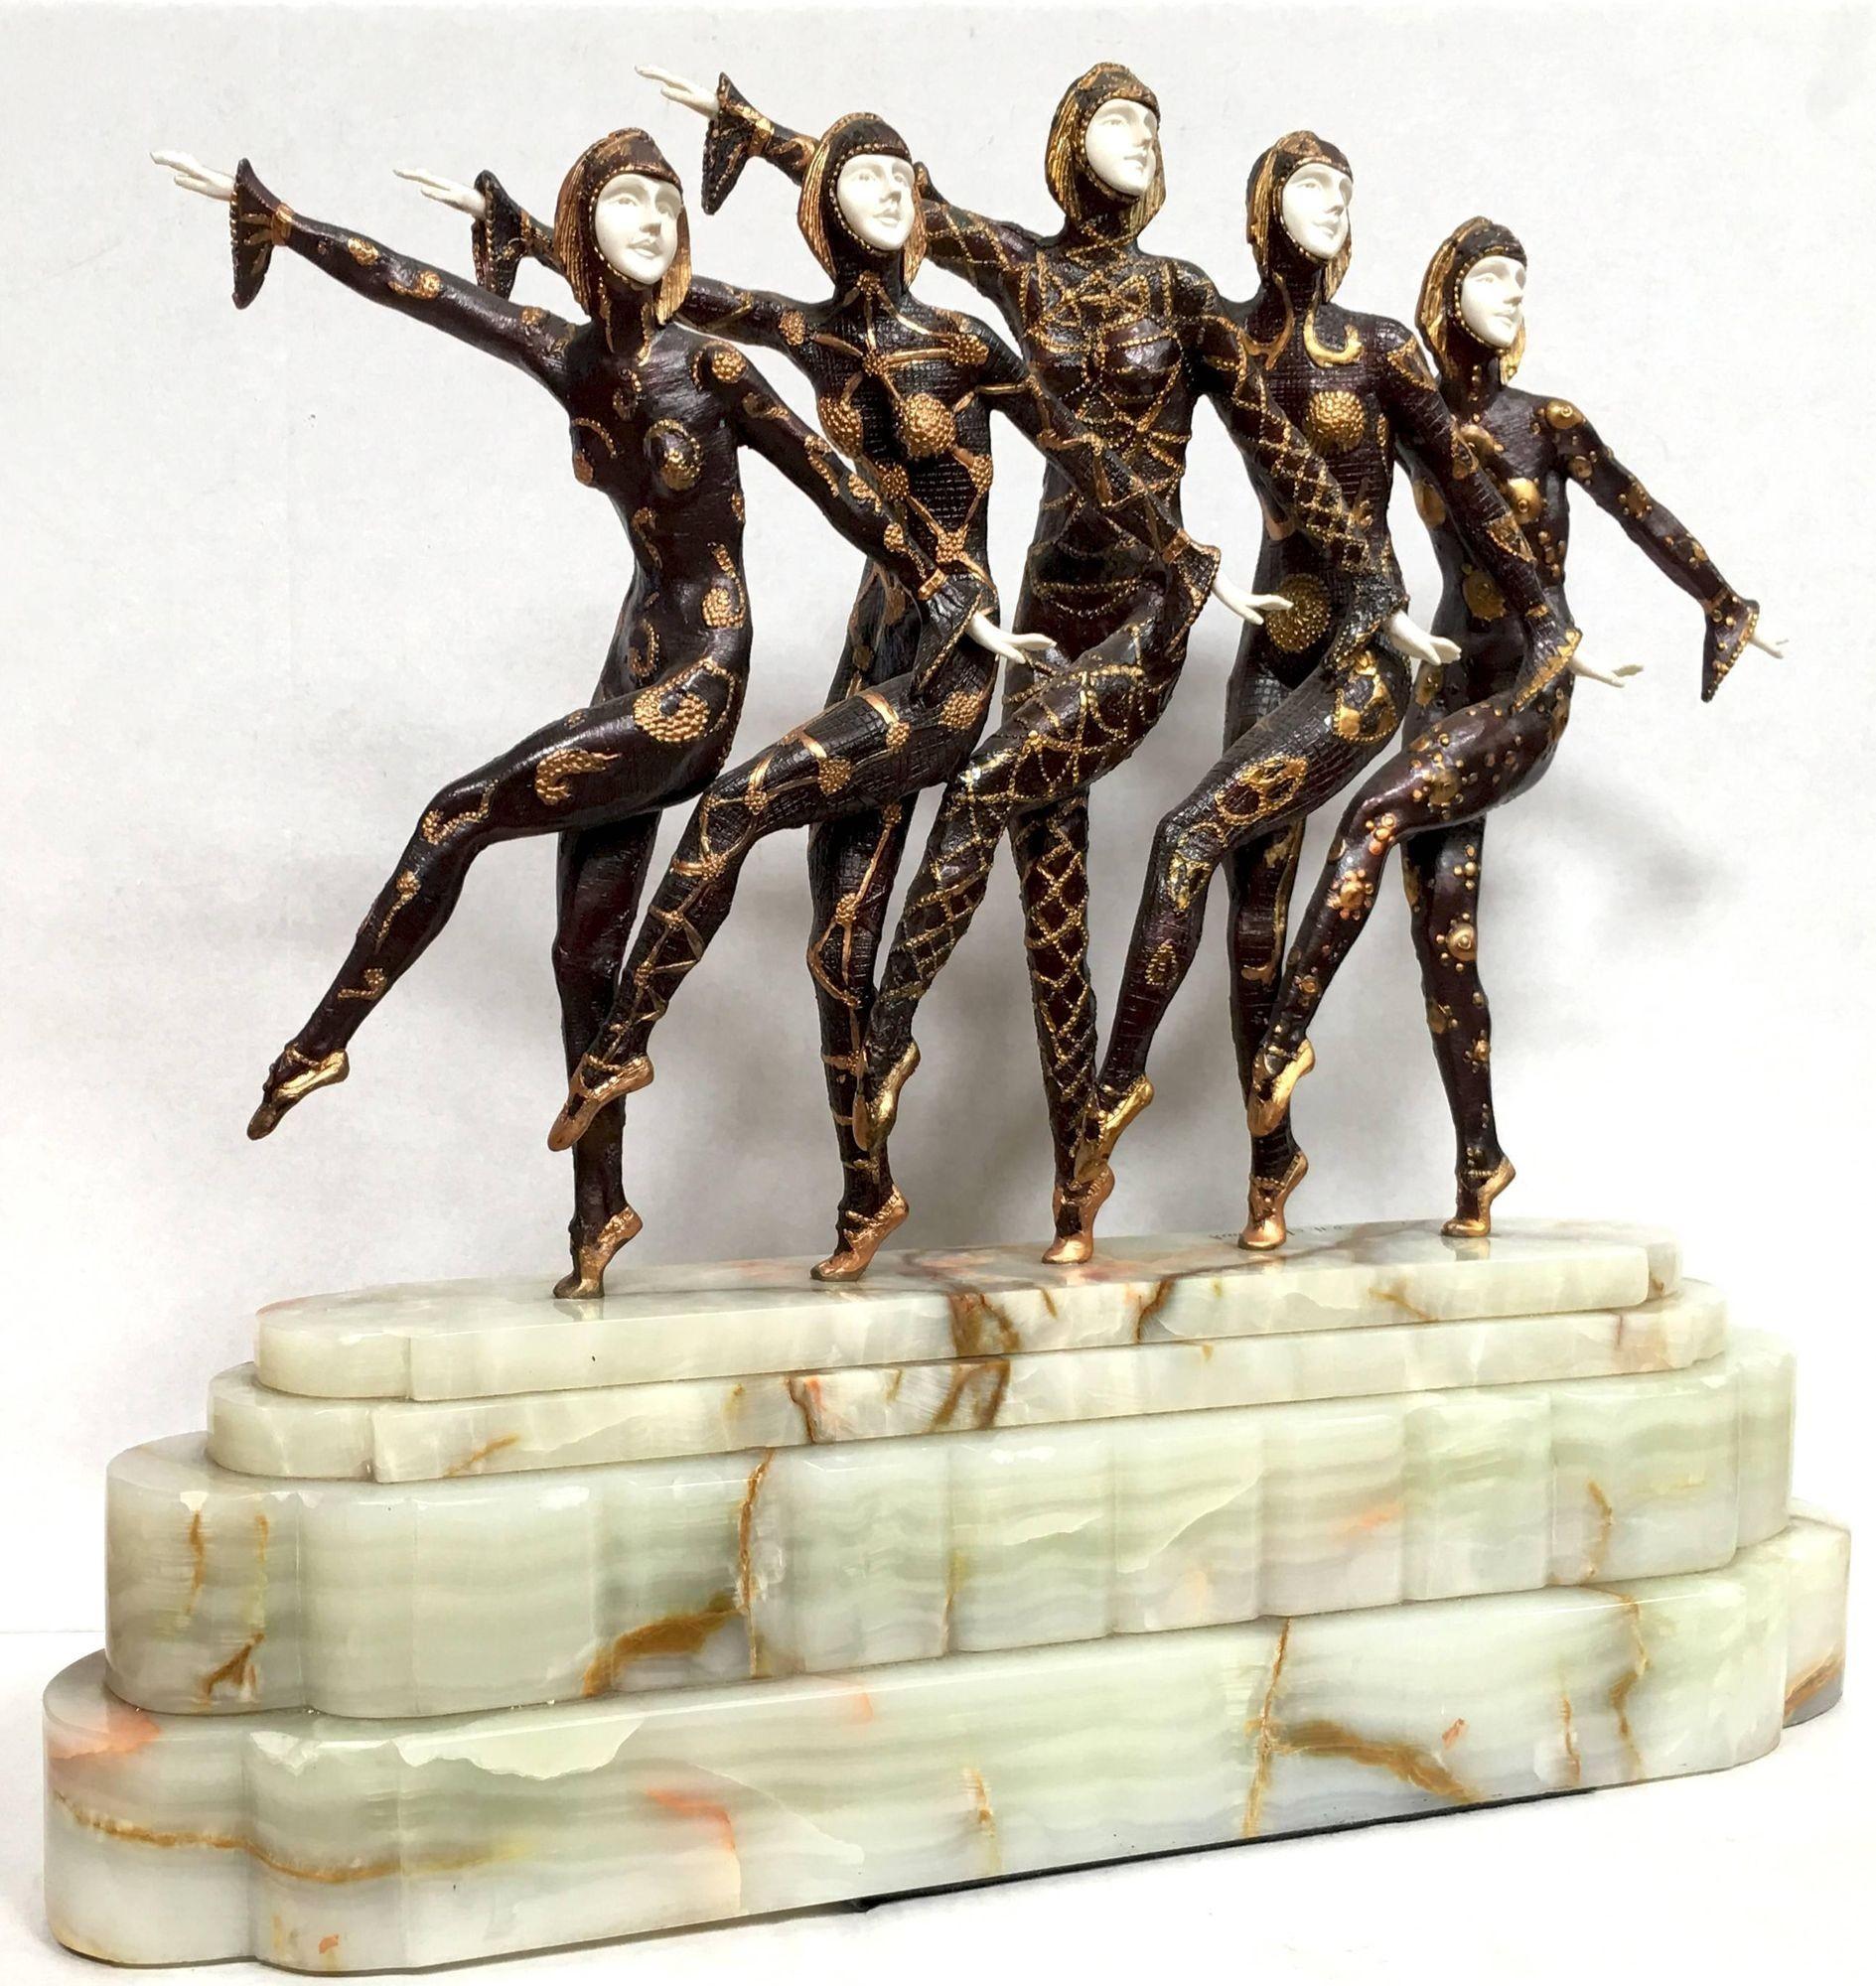 Grande sculpture Art Déco représentant une danseuse de style Chiparus avec une base en marbre.

Produit fabriqué à la main aux États-Unis avec des matériaux de la plus haute qualité et une expérience de plus de 30 ans dans le domaine du luxe :